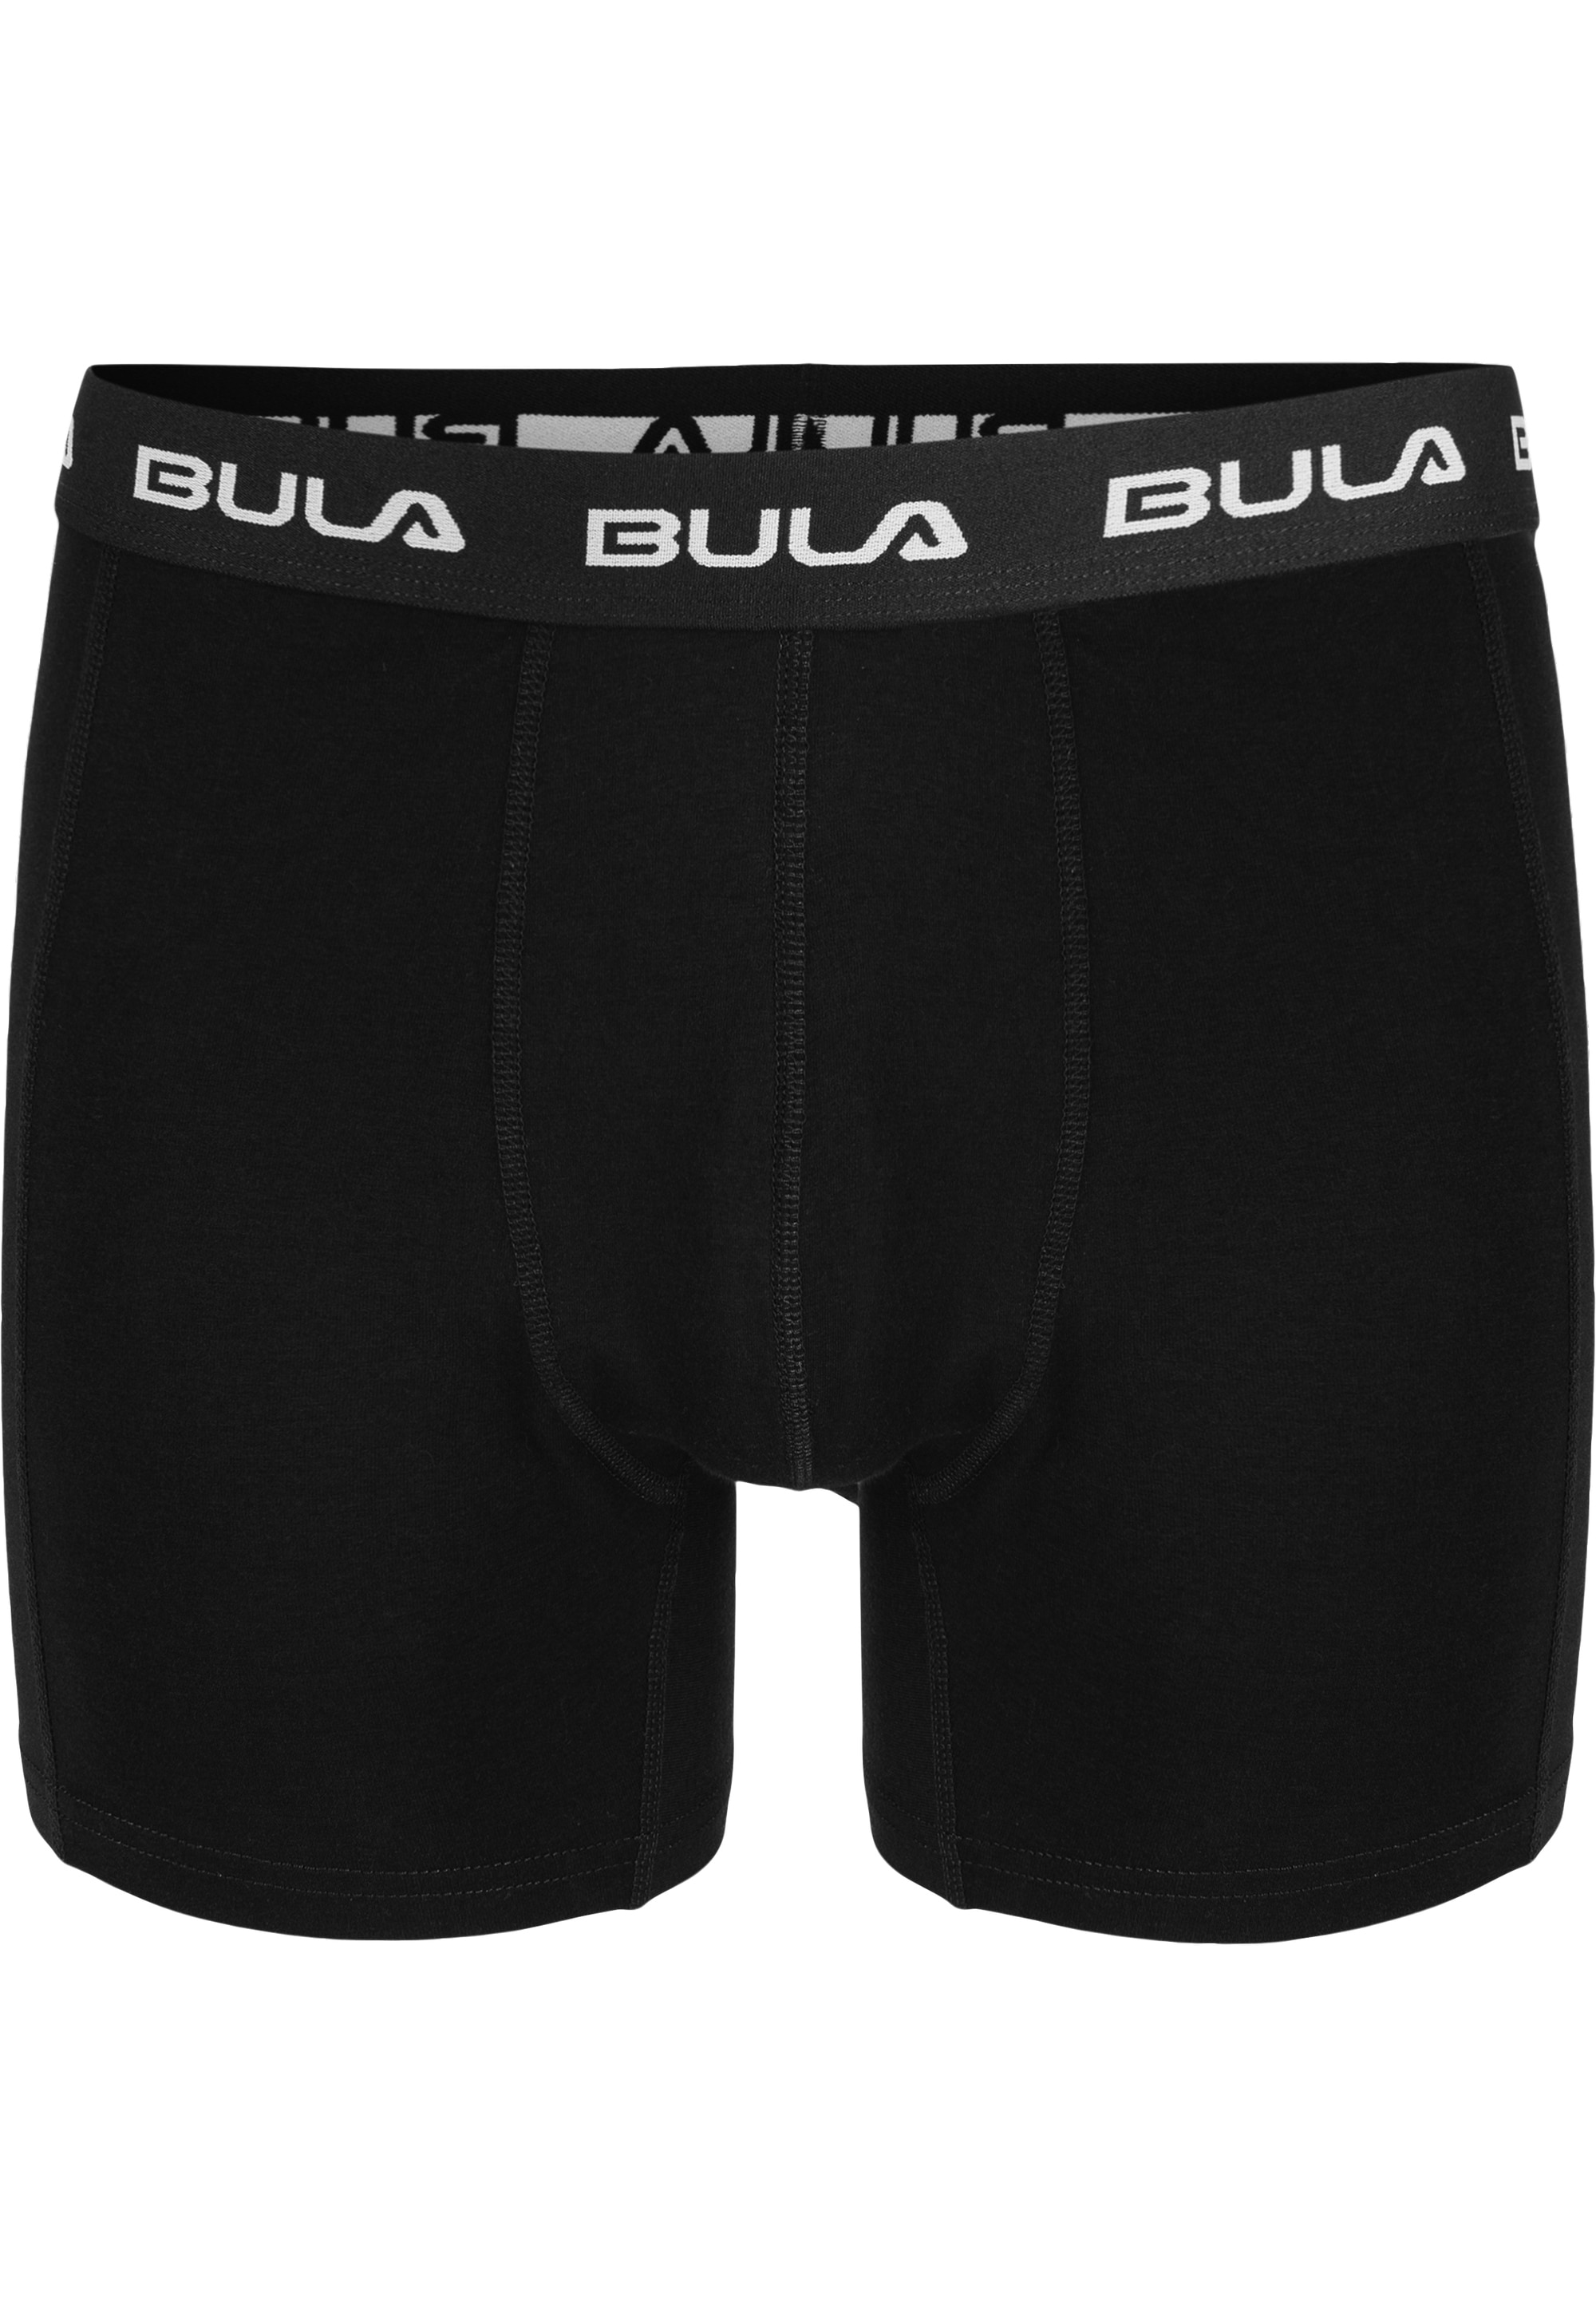 BULA Boxershorts, 2er-Pack im sportlichen Design